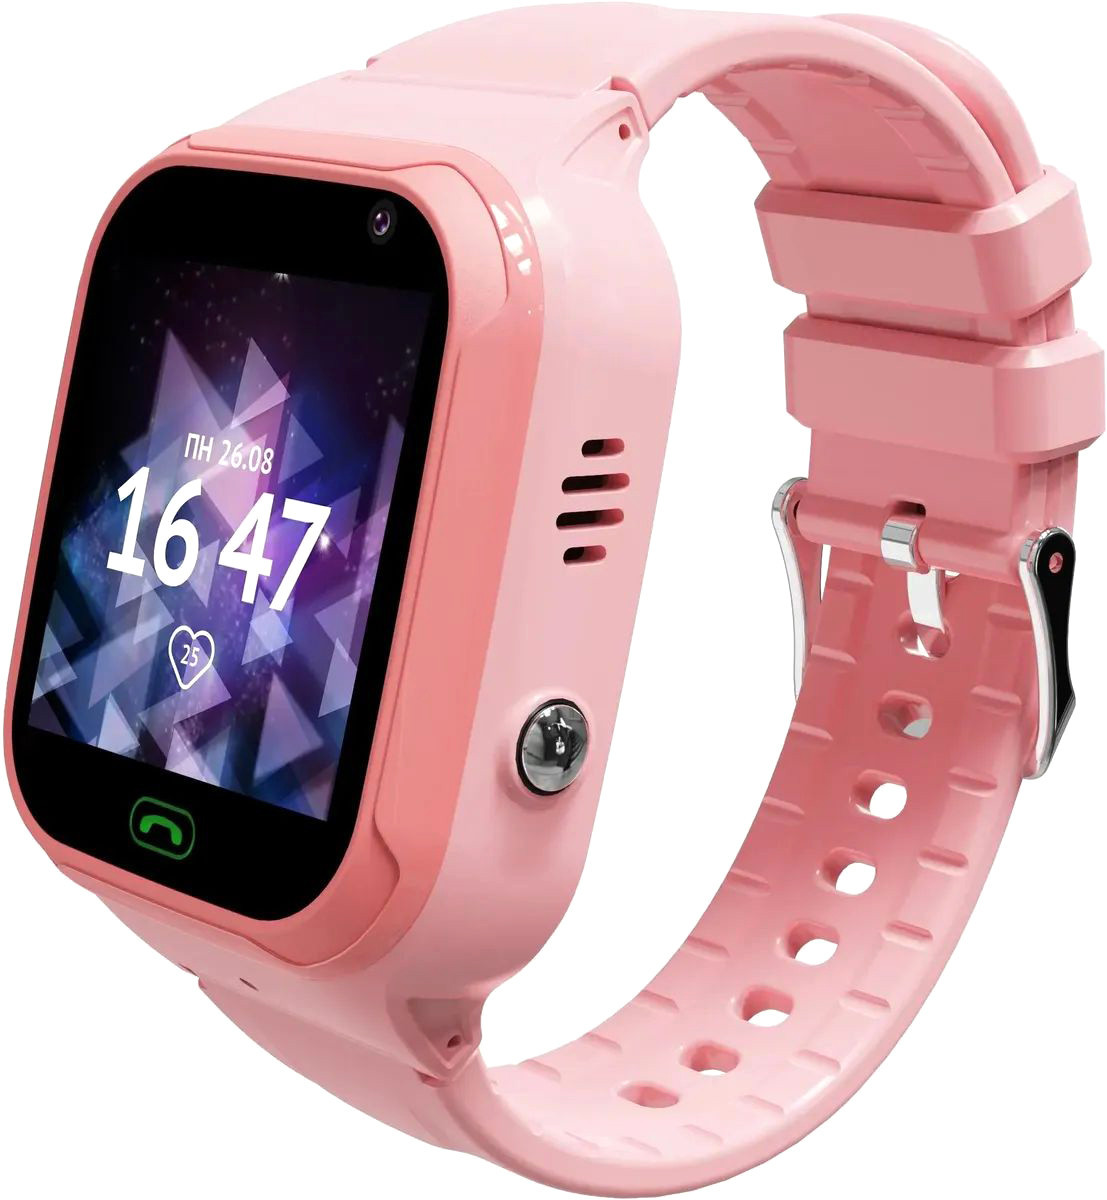 

Детские умные часы Aimoto Omega 4G (розовый)